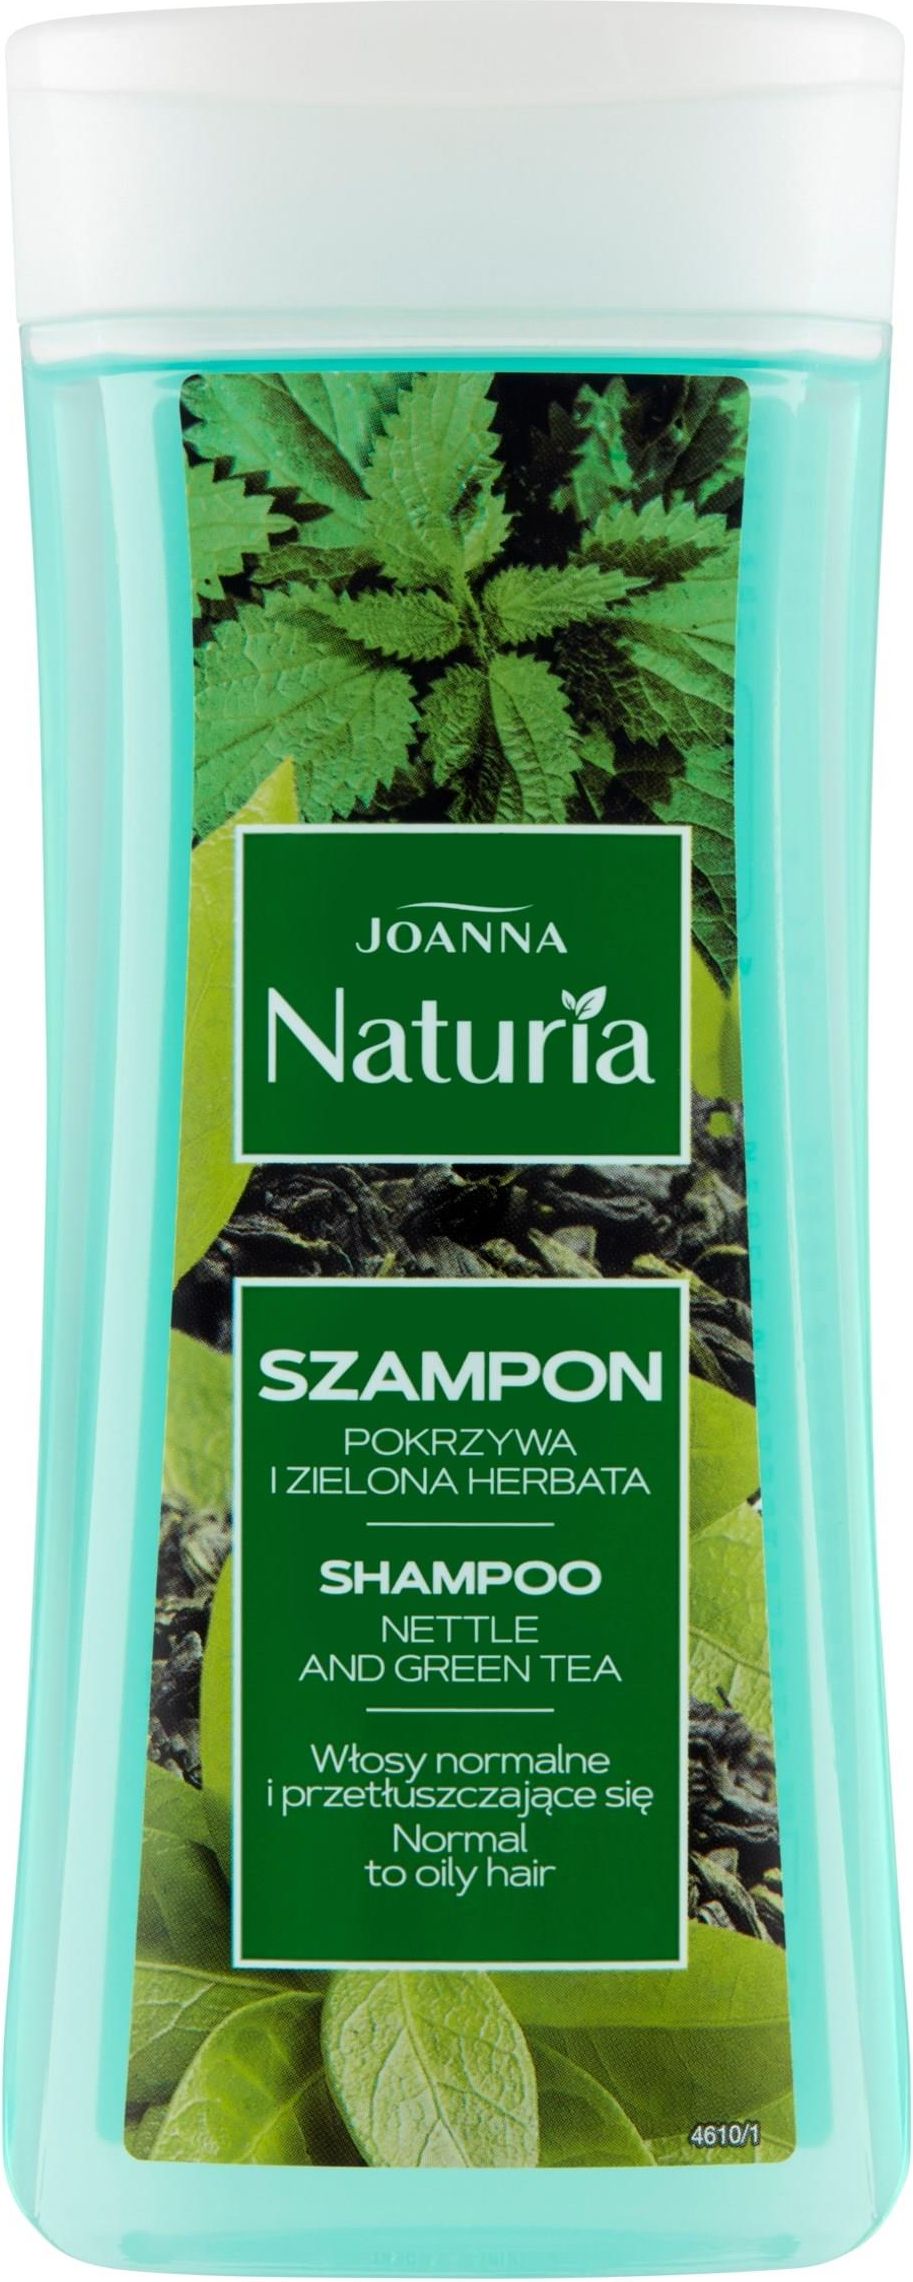 joanna naturia szampon z pokrzywą